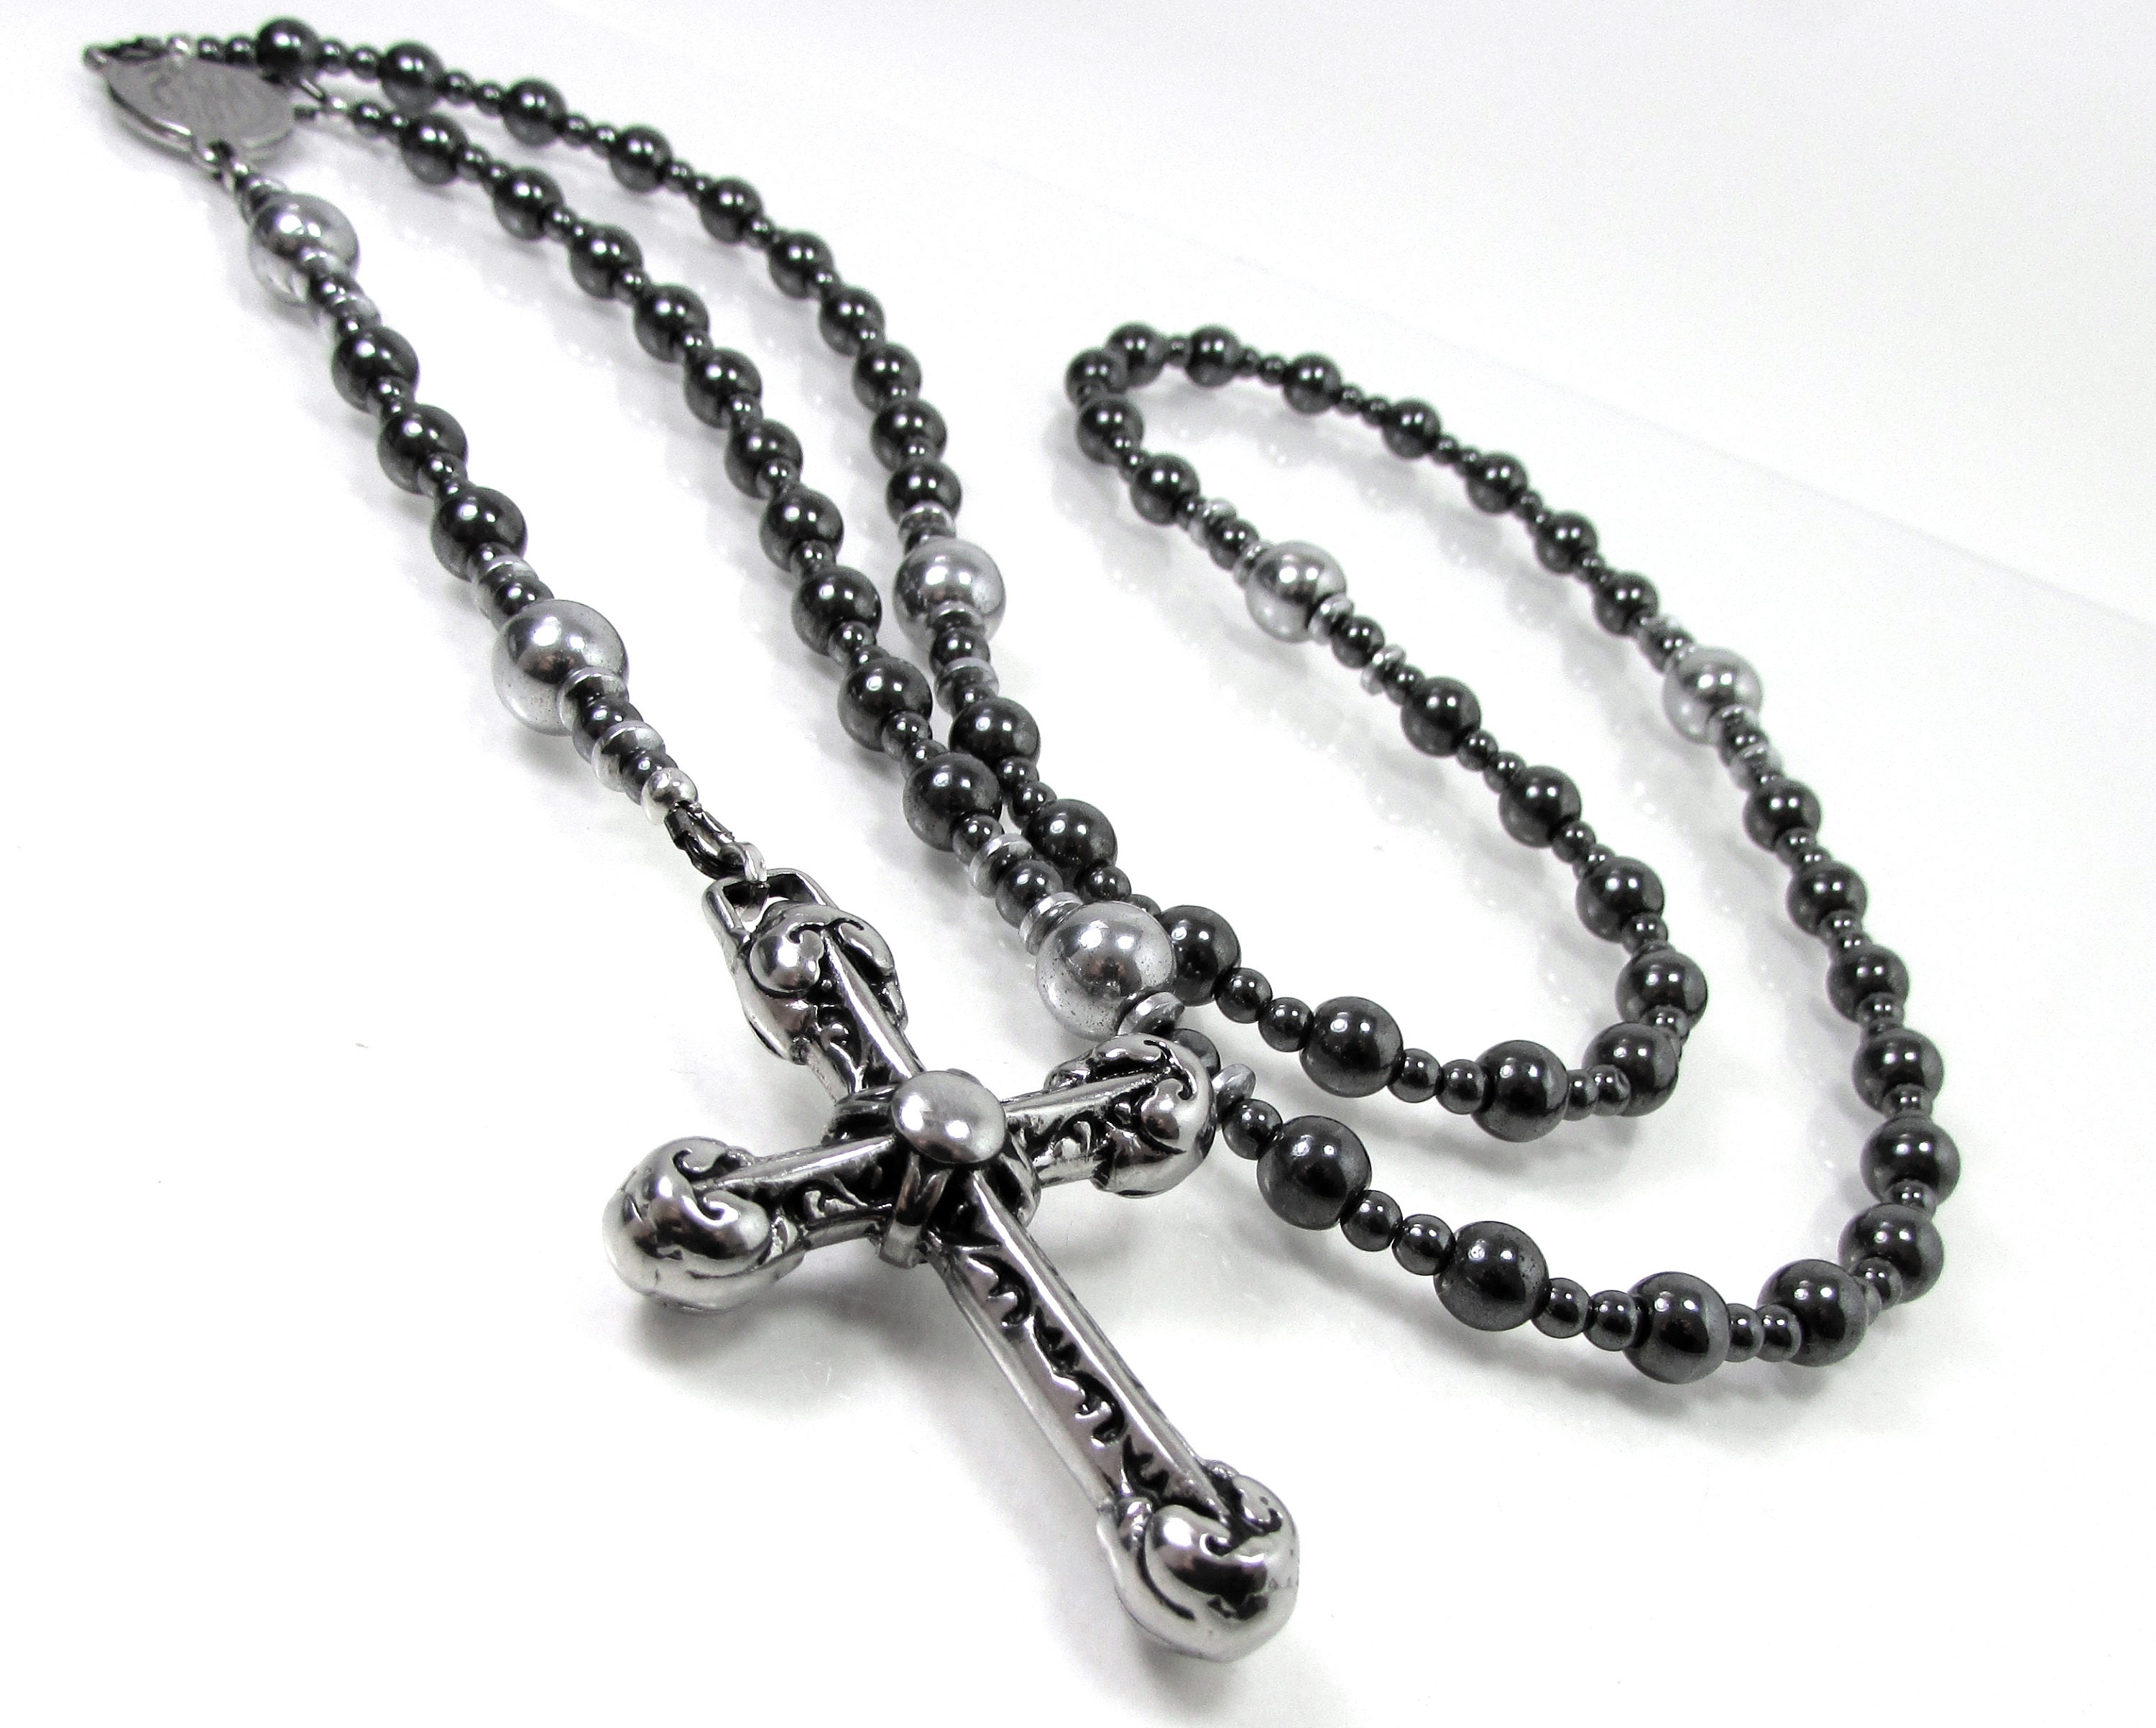 Sarah Michelle Gellar on her Cruel Intentions crucifix necklace